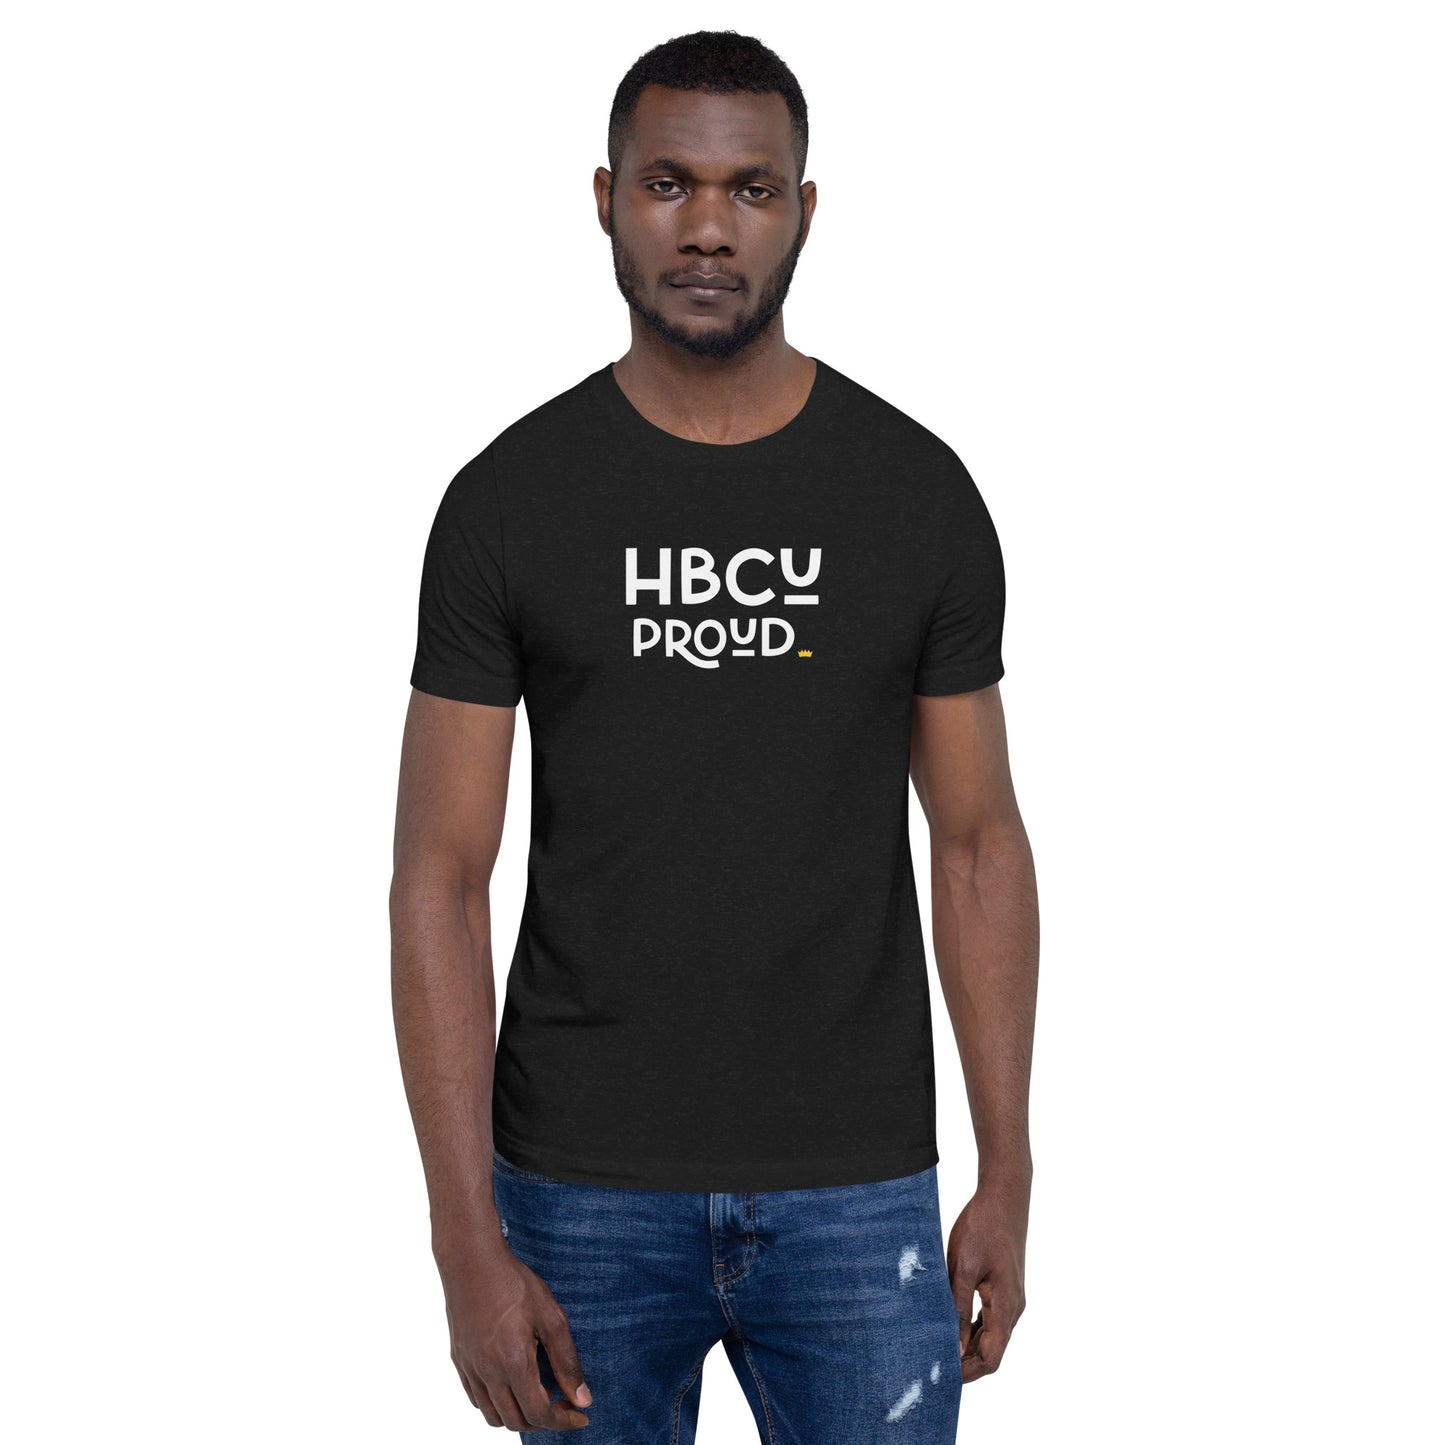 Proud - HBCU Unisex T-Shirt